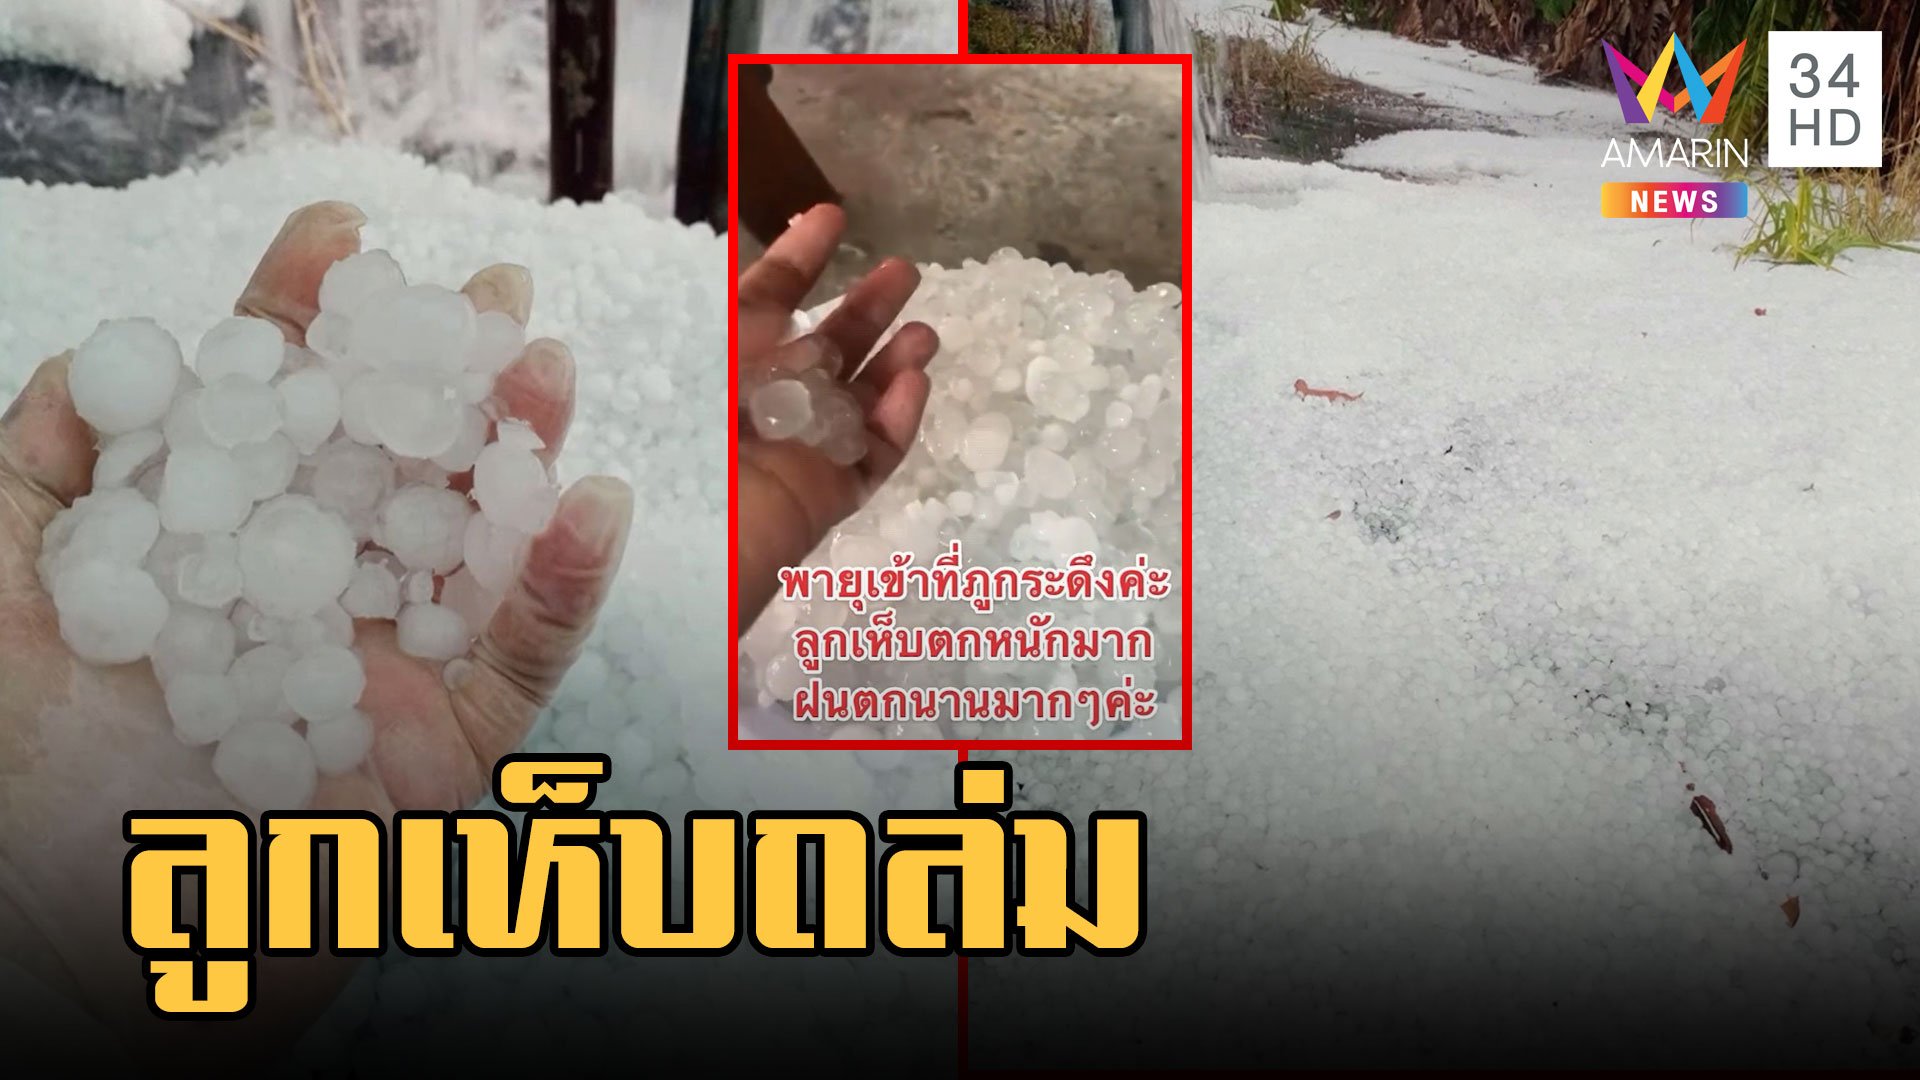 พายุฤดูร้อนถล่ม ลูกเห็บถล่มน้ำหนาว ขาวโพลนราวหิมะ | ข่าวอรุณอมรินทร์ | 22 เม.ย. 66 | AMARIN TVHD34